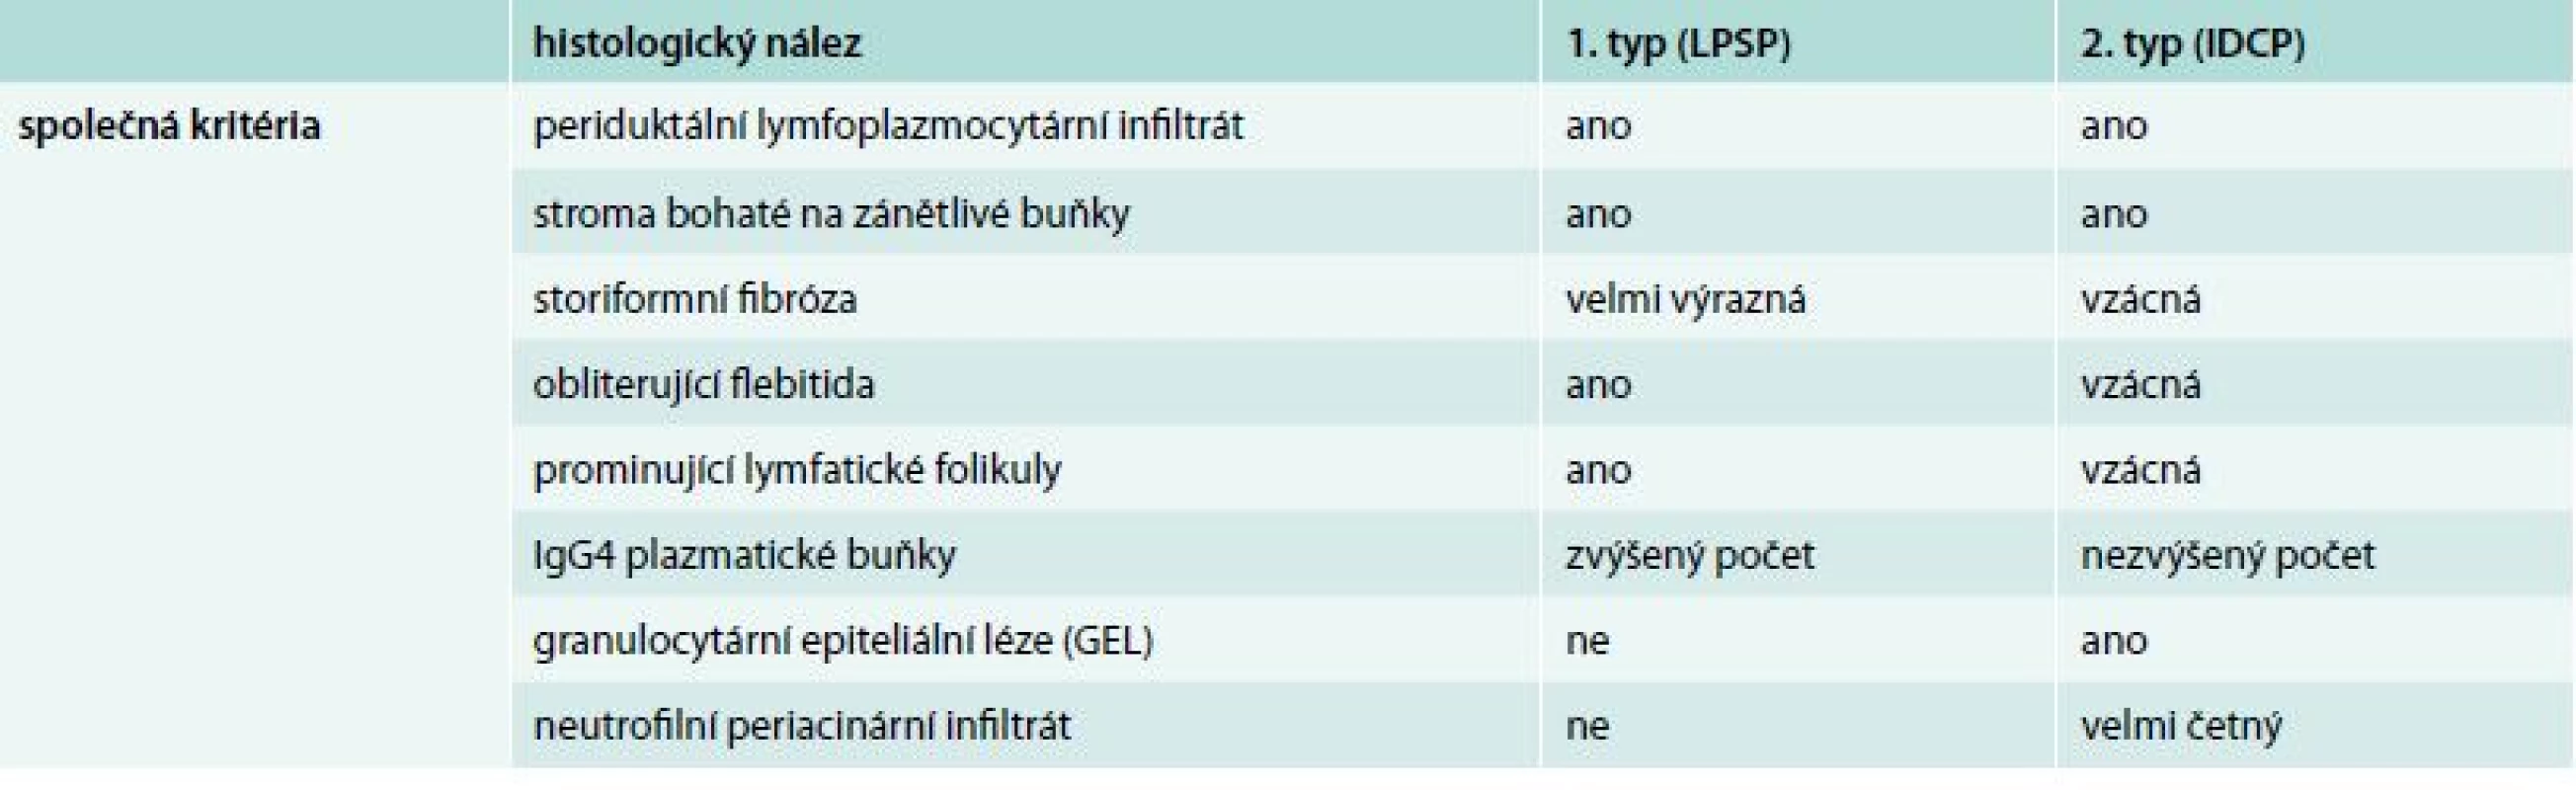 Histopatologická kritéria pro diagnostiku autoimunitní pankreatitidy 1. a 2. typu